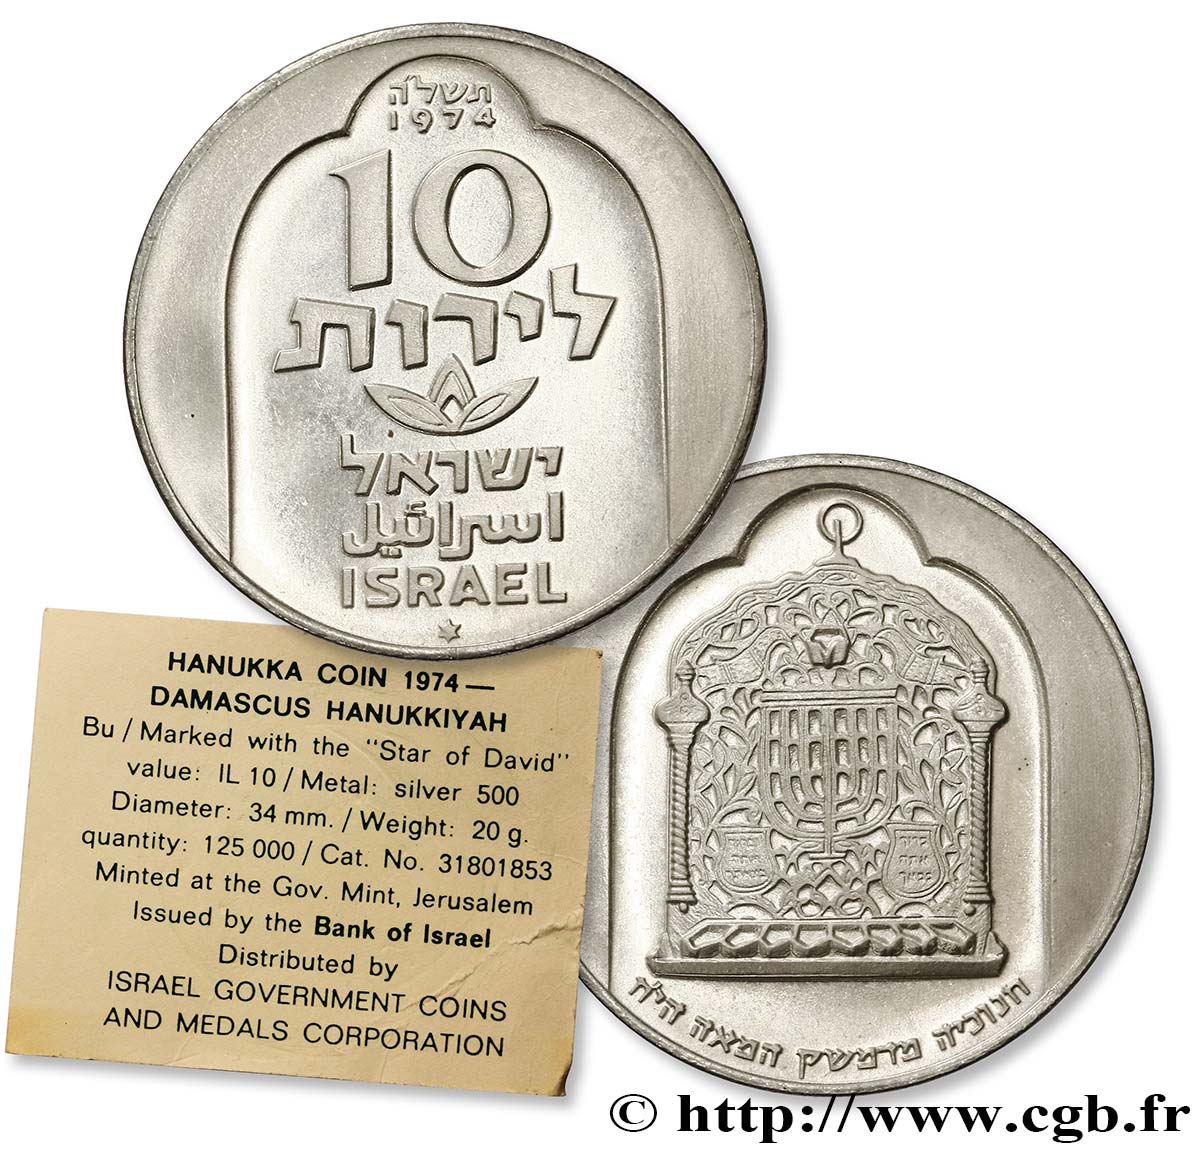 ISRAELE 10 Lirot Proof Hanukka Lampe de Damas variété avec étoile de David 1974  FDC 